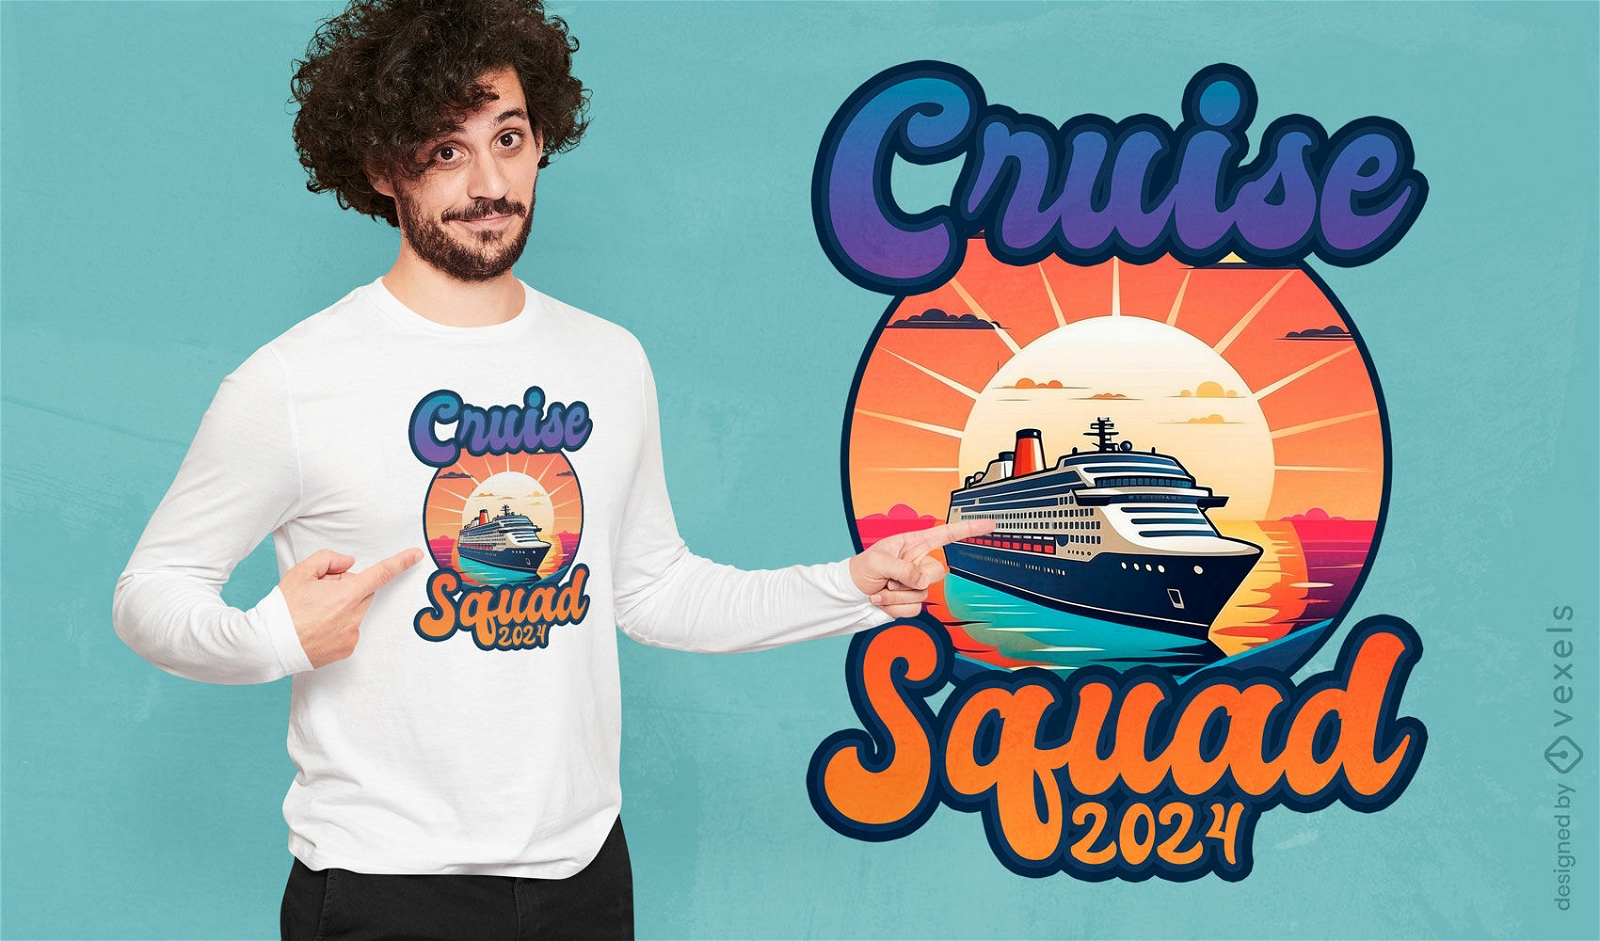 Cruise squad t-shirt design